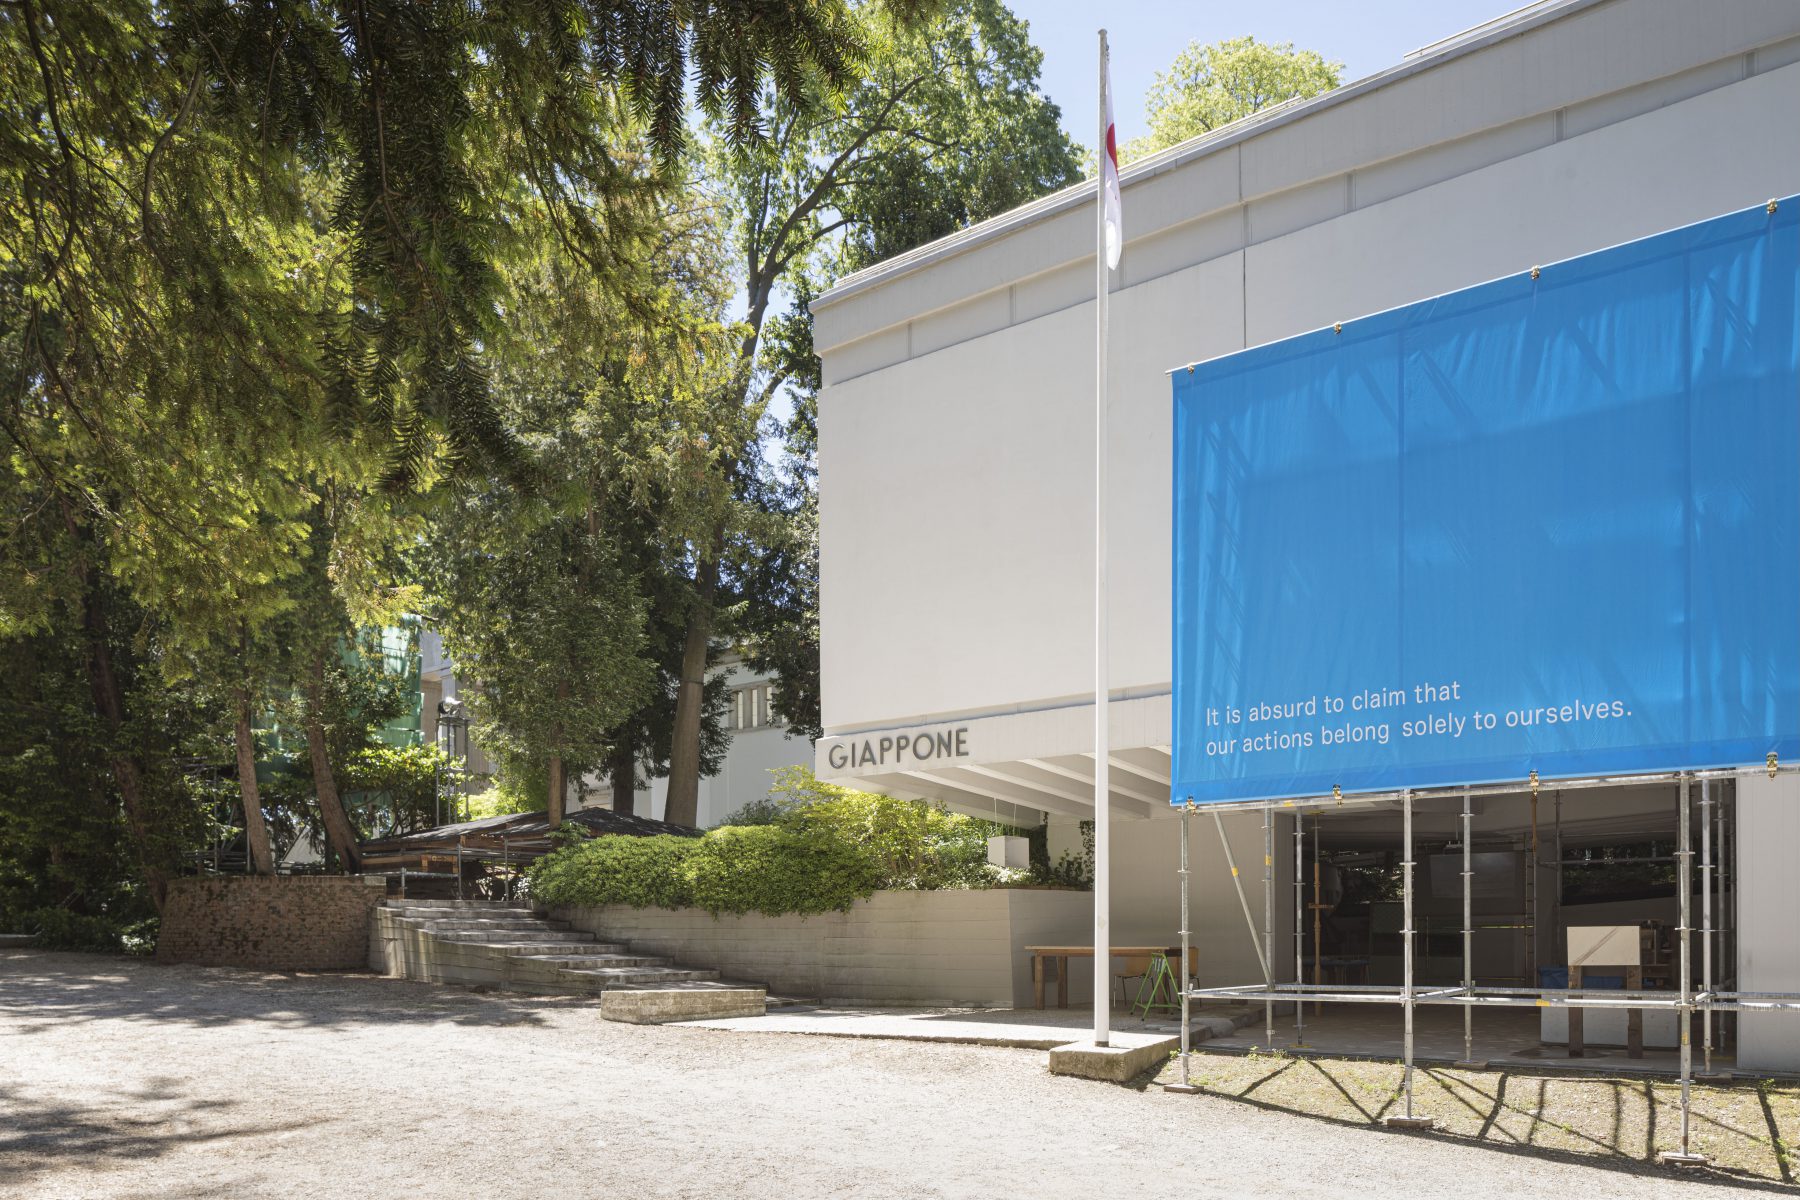 The17th International Architecture Exhibition- La Biennale di Venezia/The Japan Pavilion